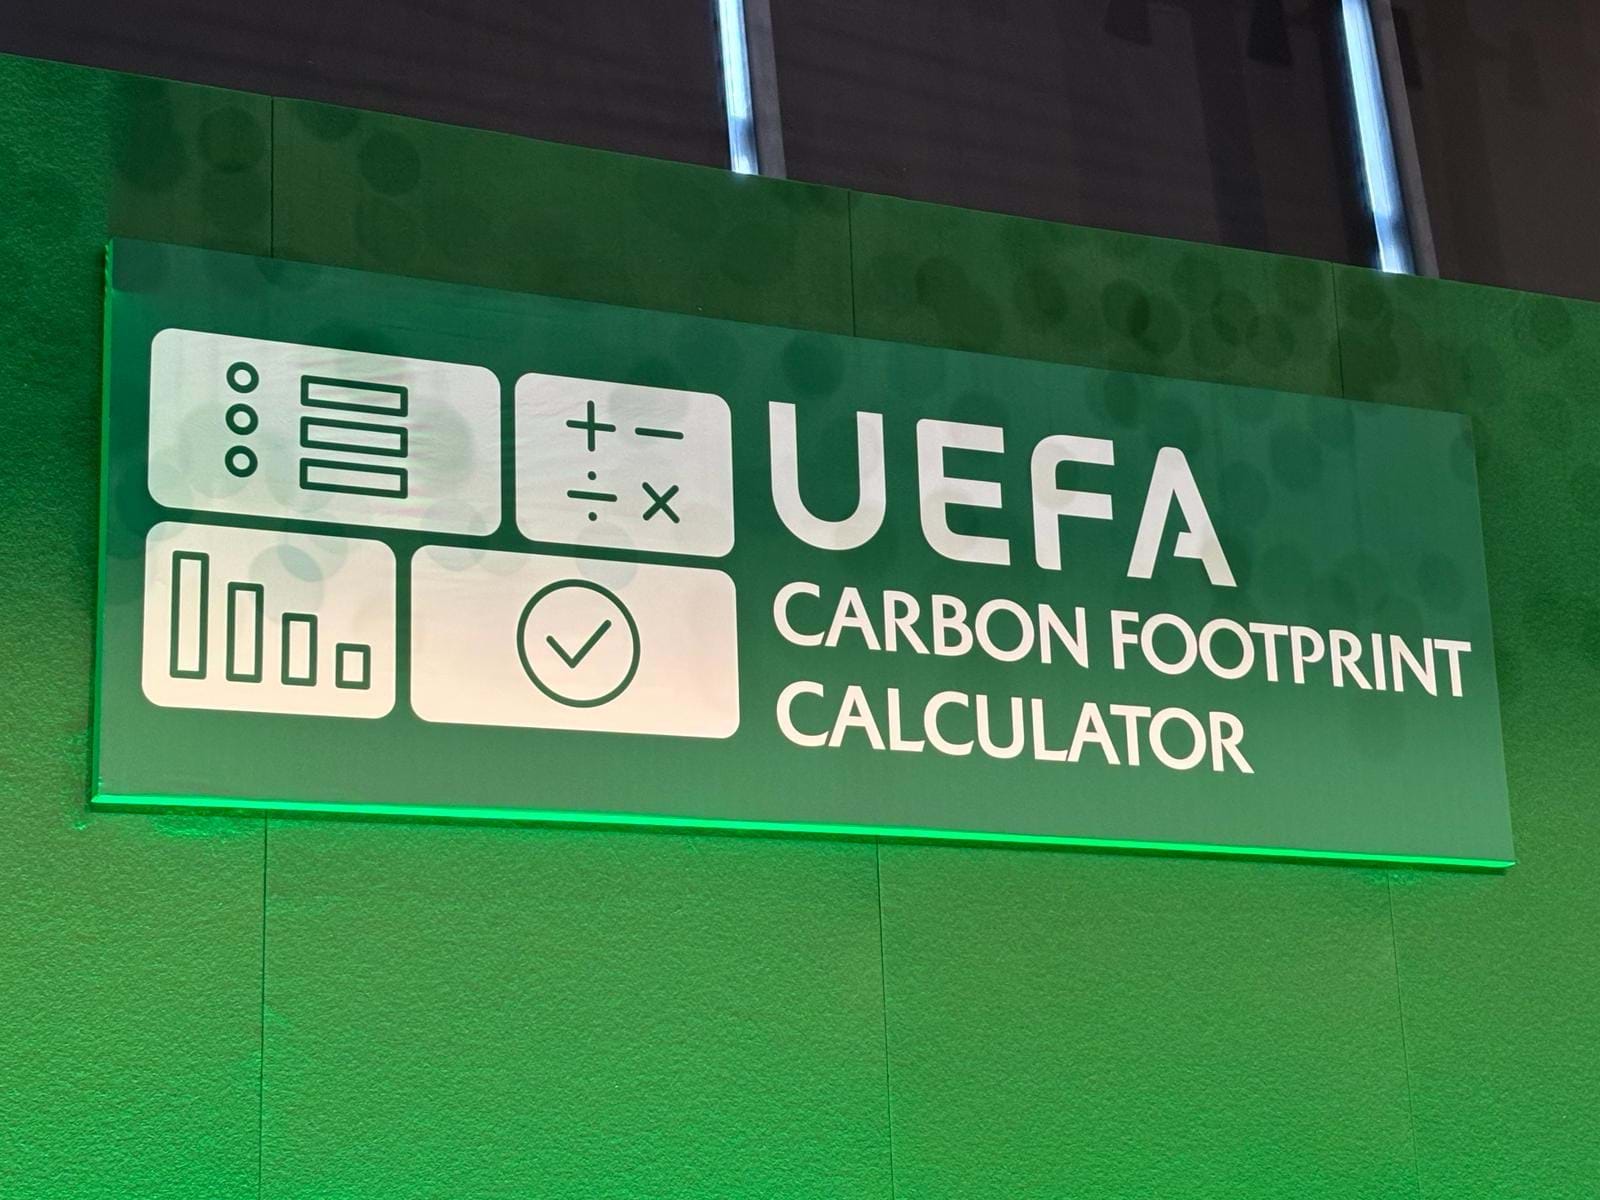 Presentato il UEFA Carbon Footprint Calculator, il calcolatore ufficiale per il calcolo delle emissioni prodotte dalle attività calcistiche